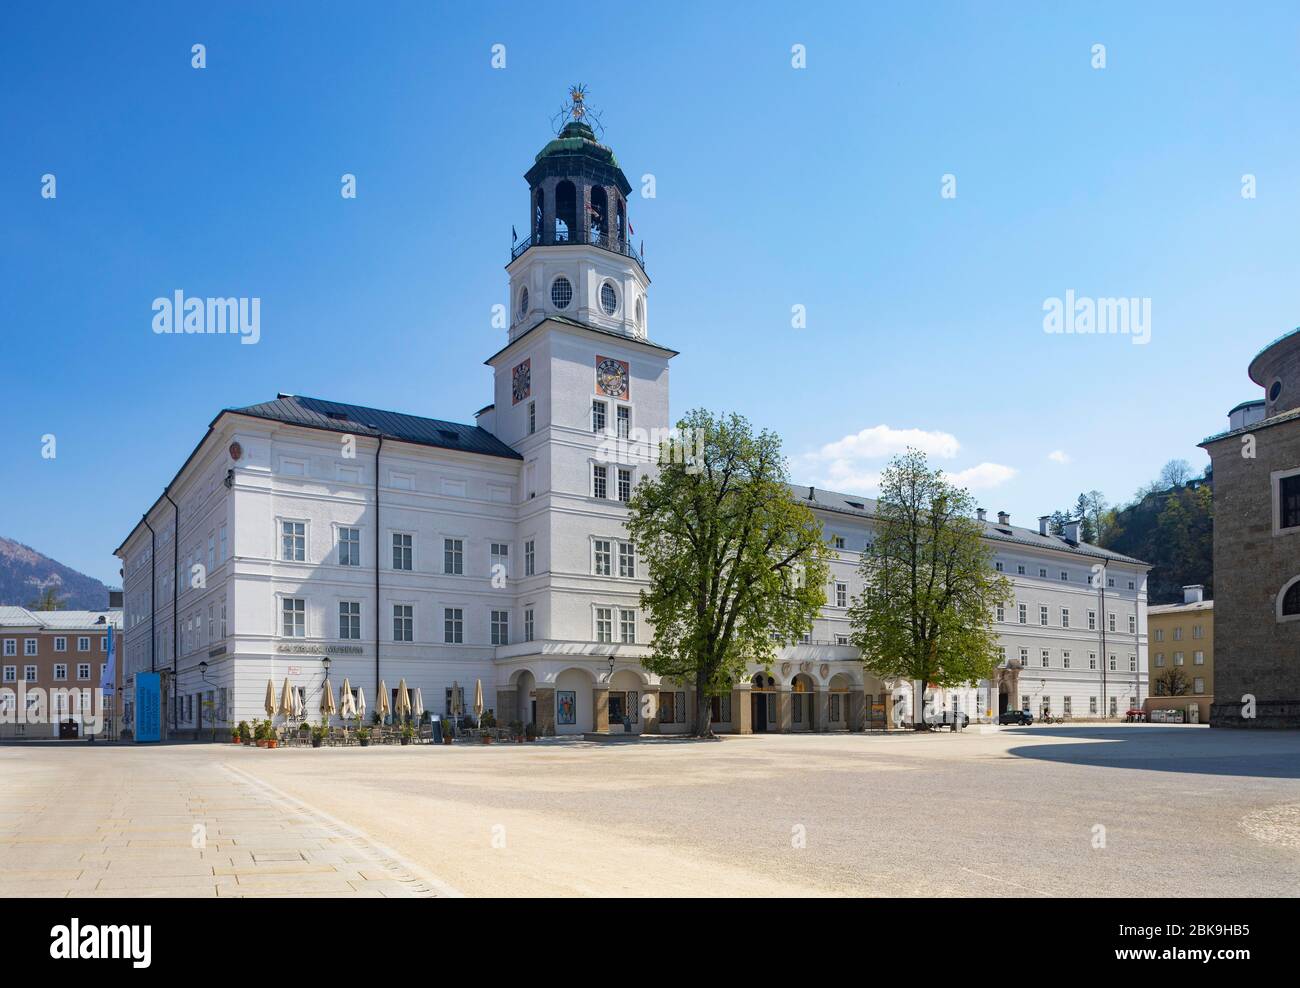 Places vacants en raison de la pandémie de coronavirus, Residenzplatz avec Nouvelle résidence et Carillon de Salzbourg, Salzbourg, Autriche Banque D'Images